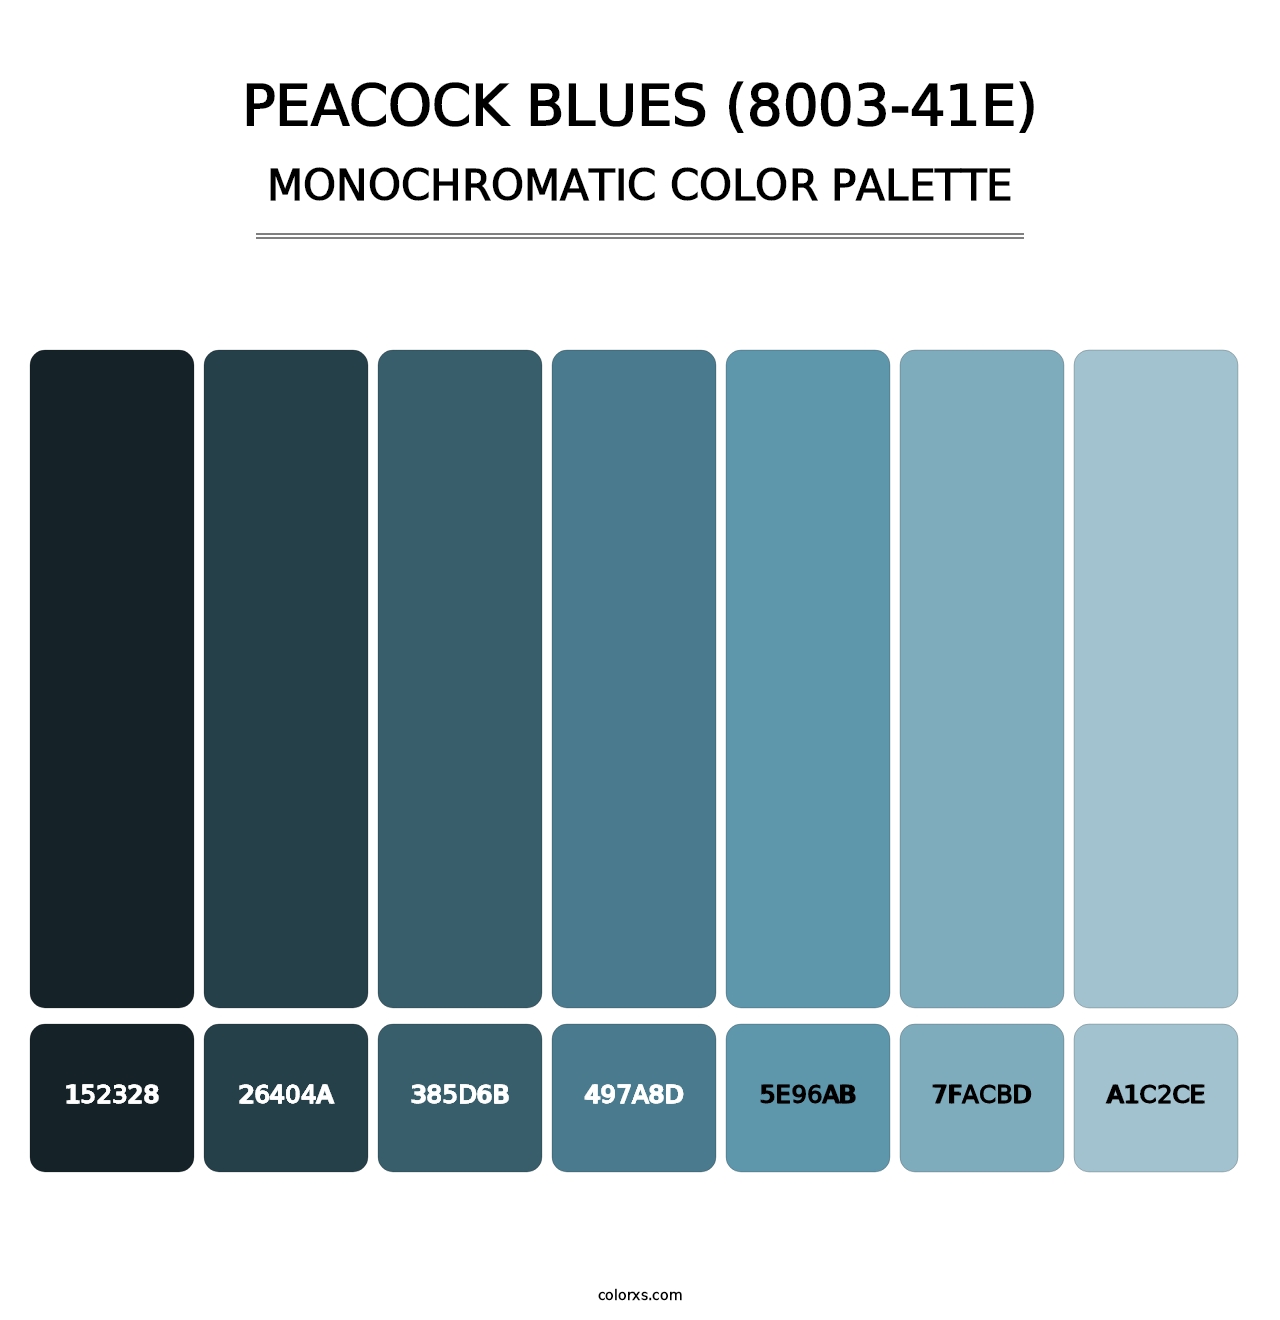 Peacock Blues (8003-41E) - Monochromatic Color Palette